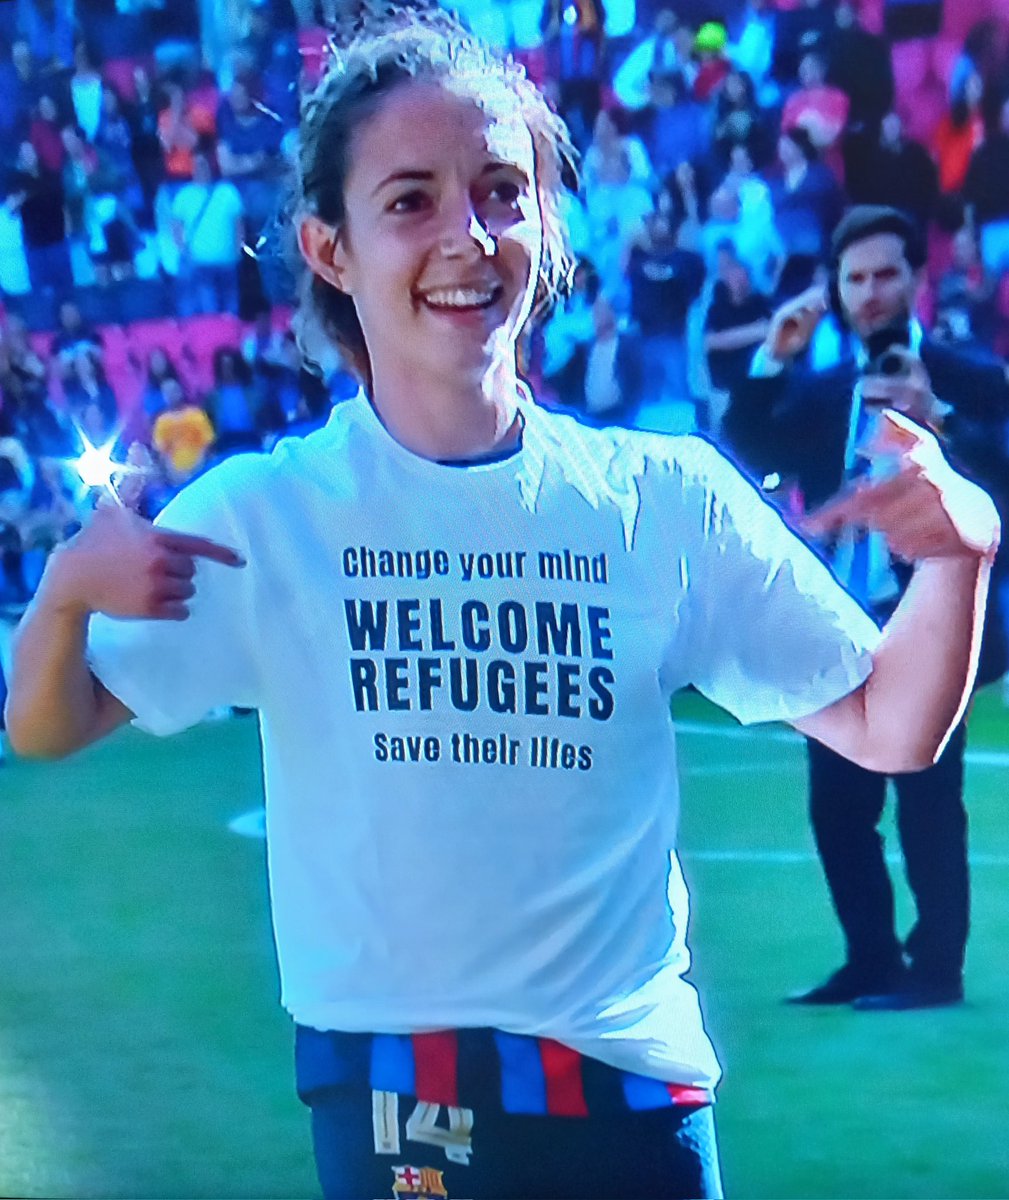 En el fútbol femenino hay deporte, conciencia y valores.
La jugadora @AitanaBonmati del @FCBfemeni lució está camiseta en la #UWCLfinal
'Cambia tu mente.
Bienvenidos Refugiados.
Salvemos sus vidas!'
Gràcies!
#ChampionsTV3 #Barça
#RefugeesWelcome